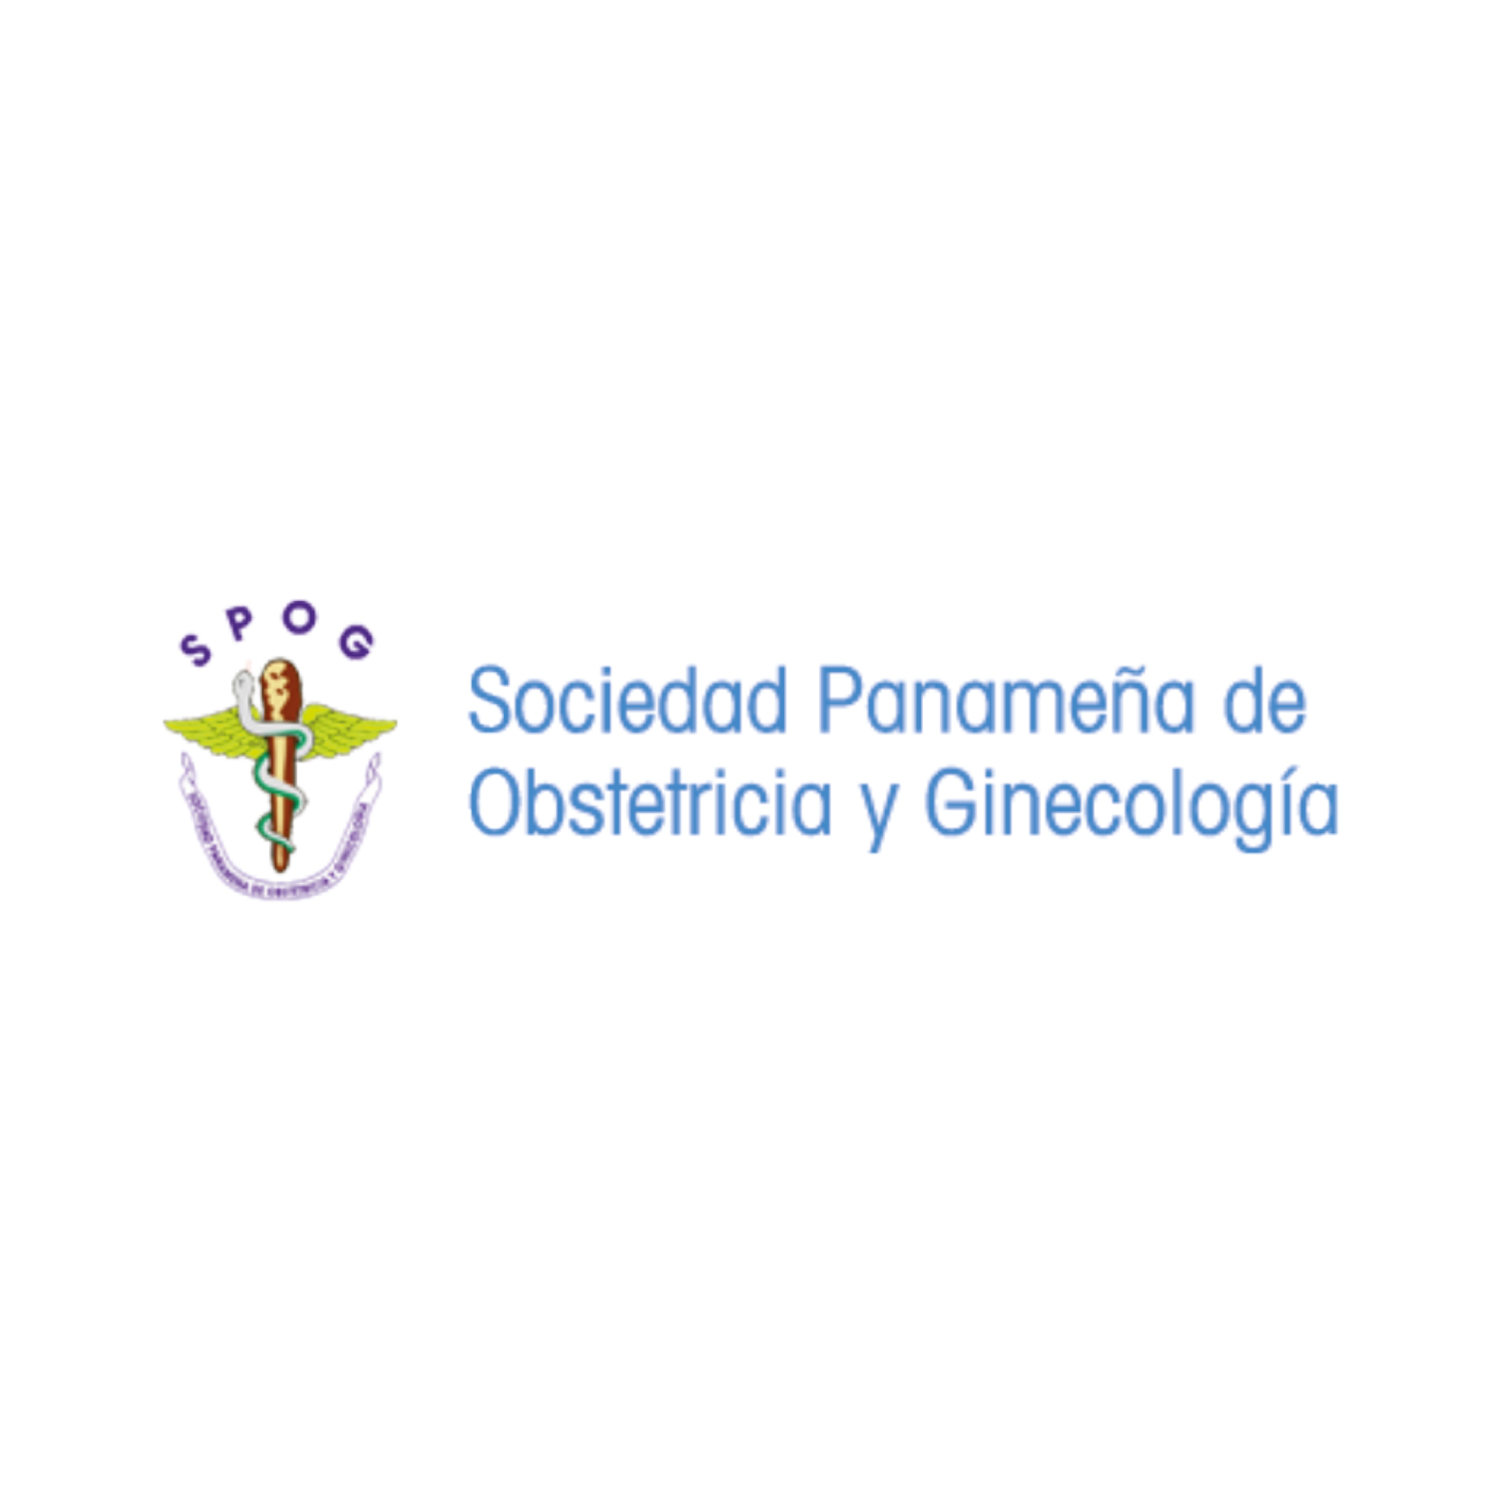 Sociedad Panamenã de Obstetricia y Ginecología (SPOG)